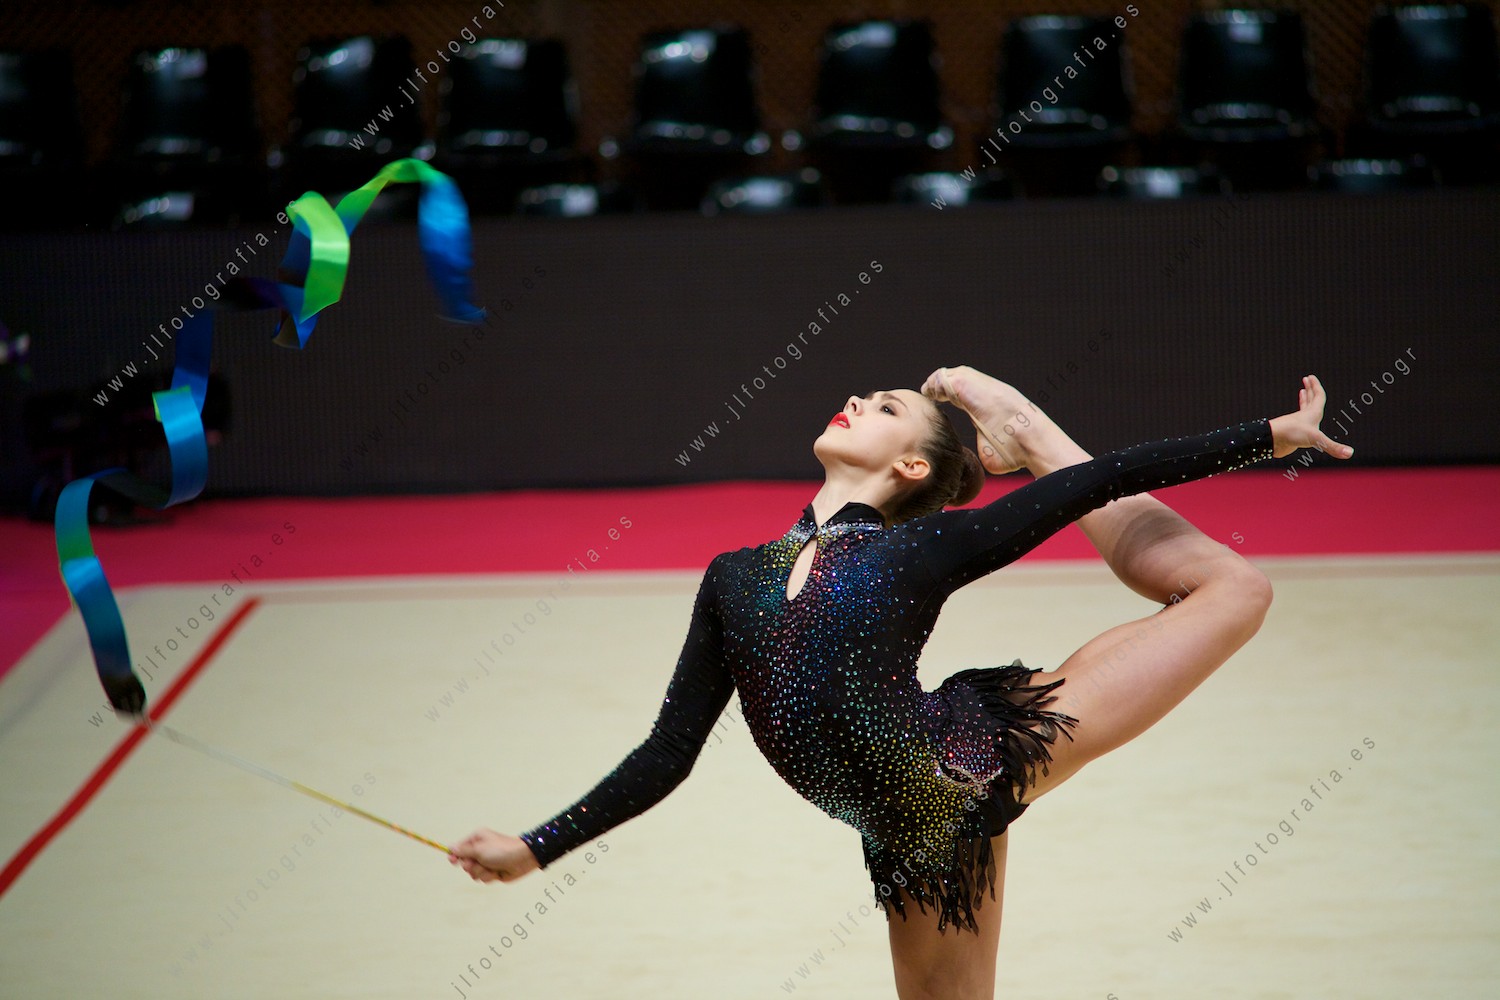 gala del Euskalgym 10 de 2015 celebrado en el Fernando Buesa Arena de Vitoria, gimnasta en pleno ejercicio con la cinta